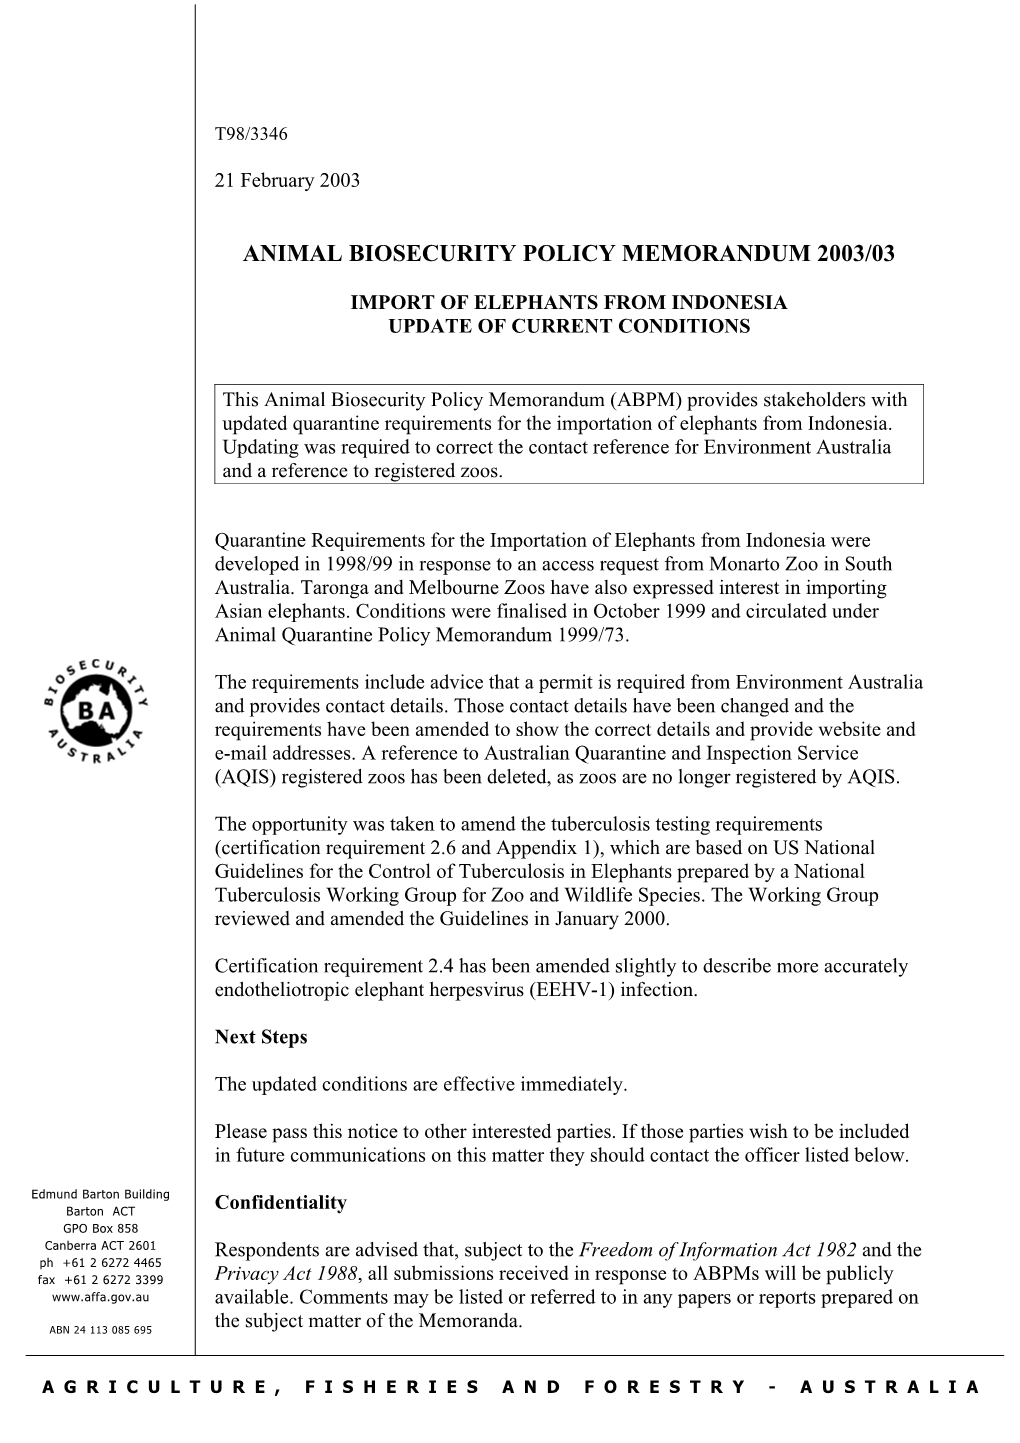 Animal Biosecurity Policy Memorandum 2003/03